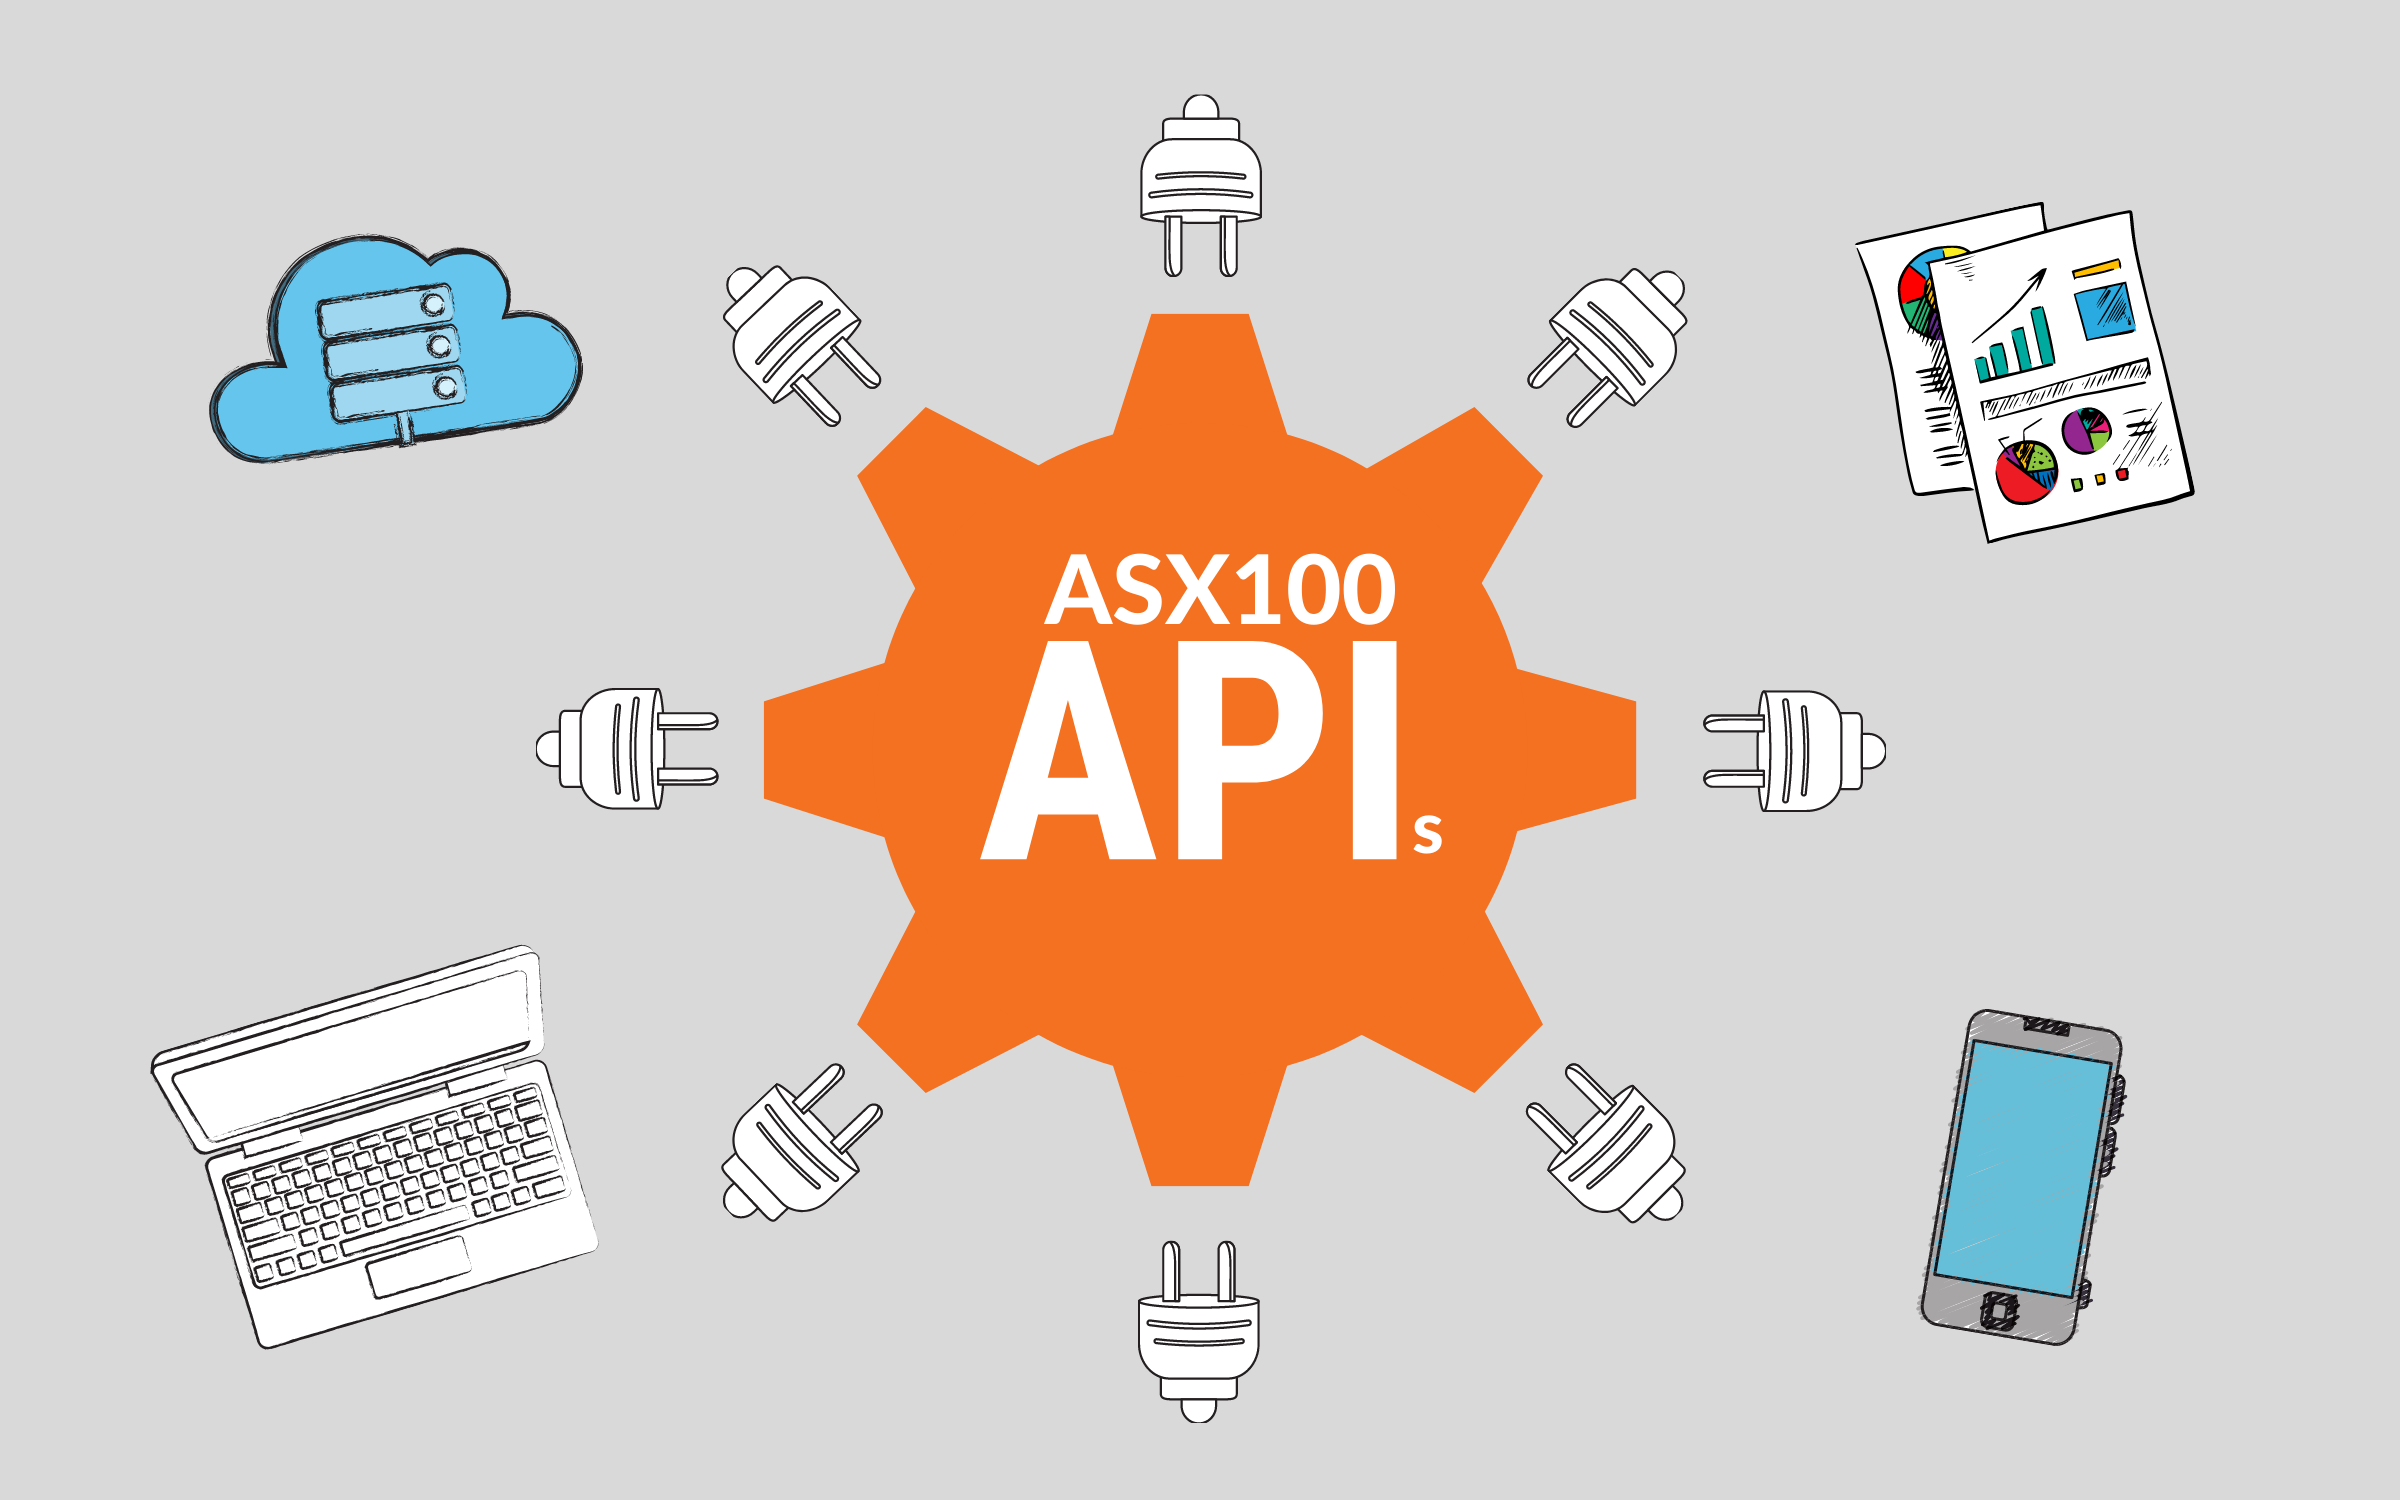 The complete list of public ASX100 APIs